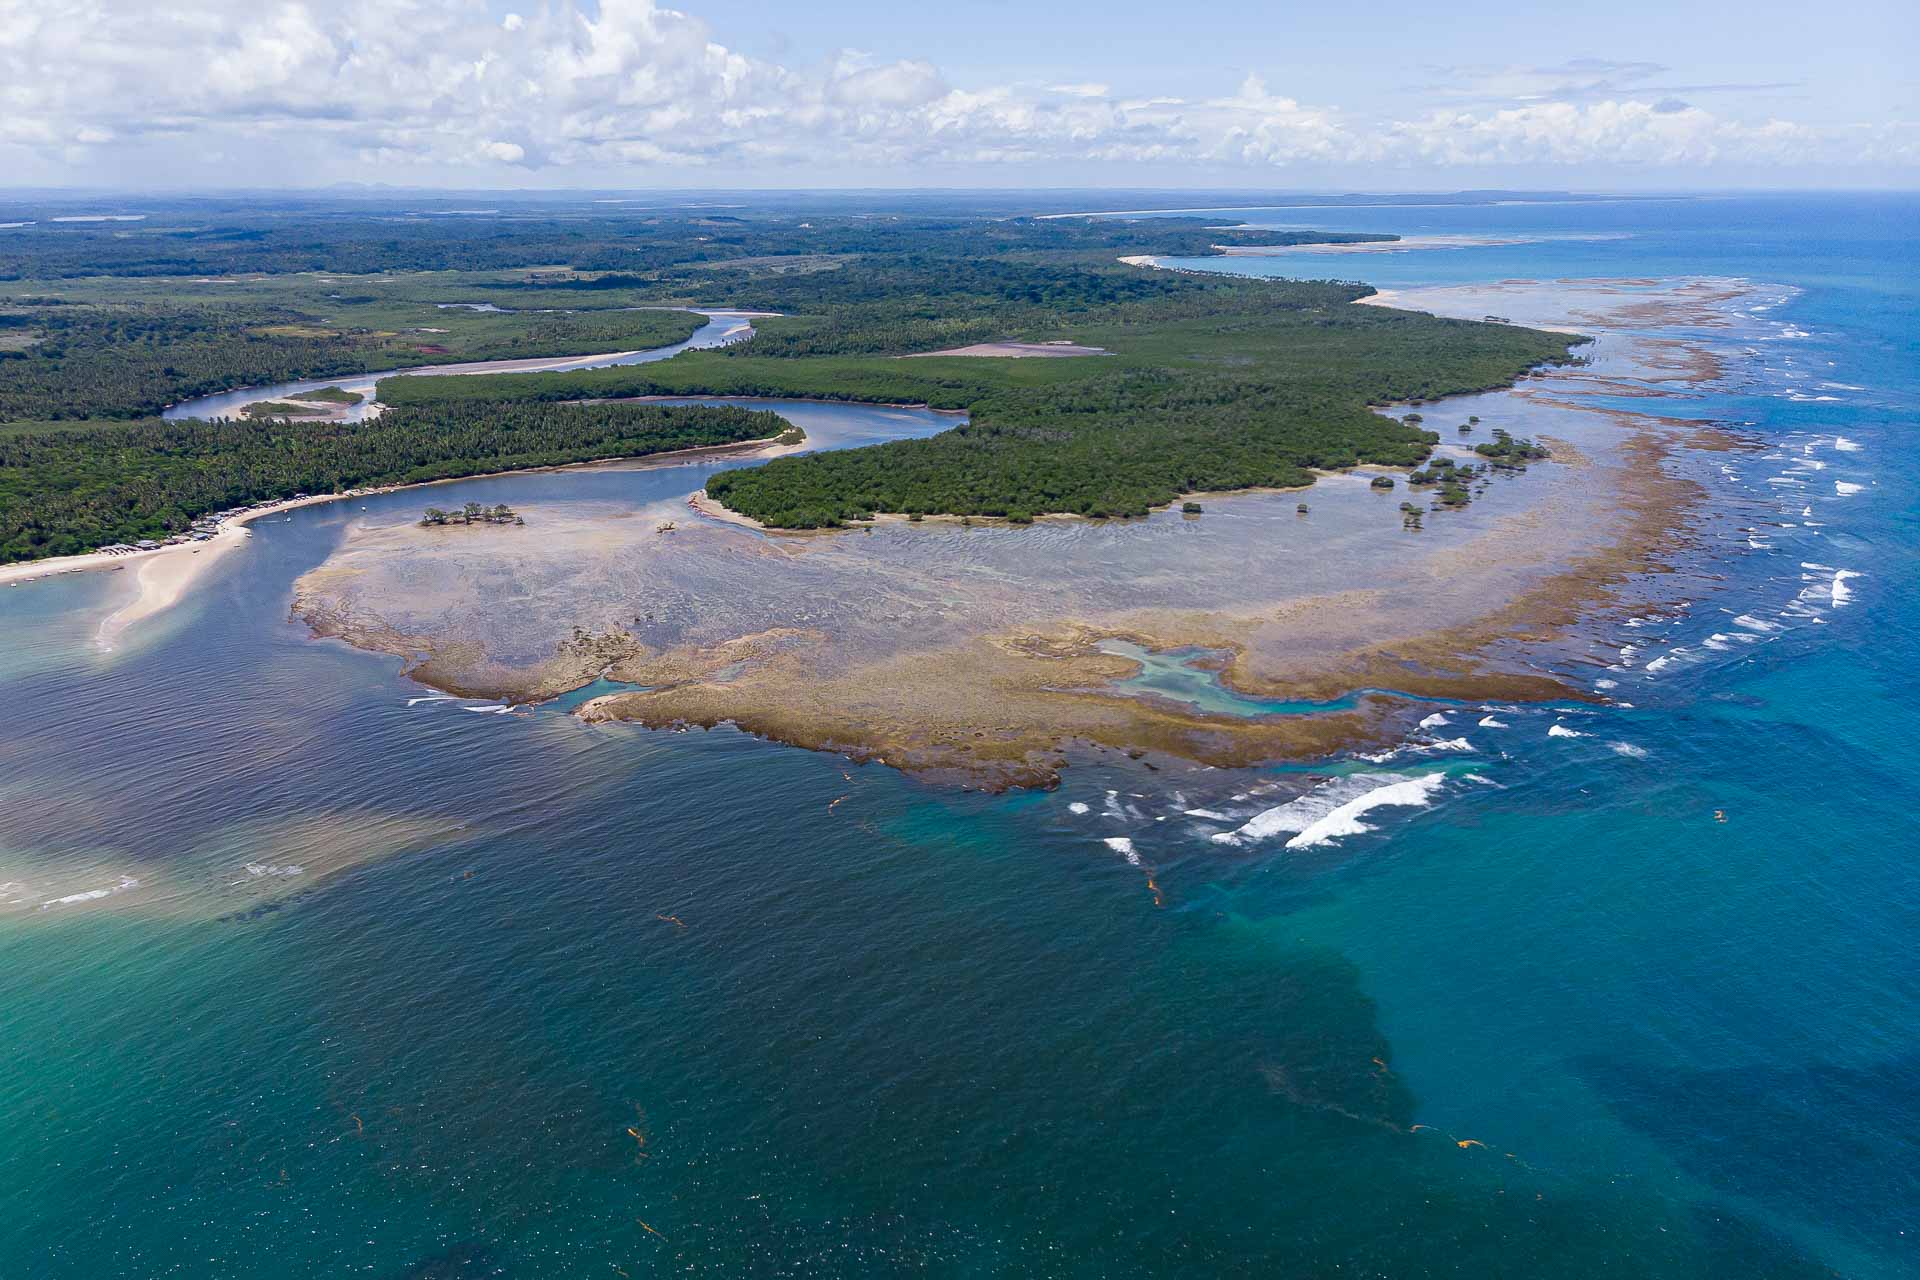 Vista aerea da costa da Ilha de Boipeba no Brasil